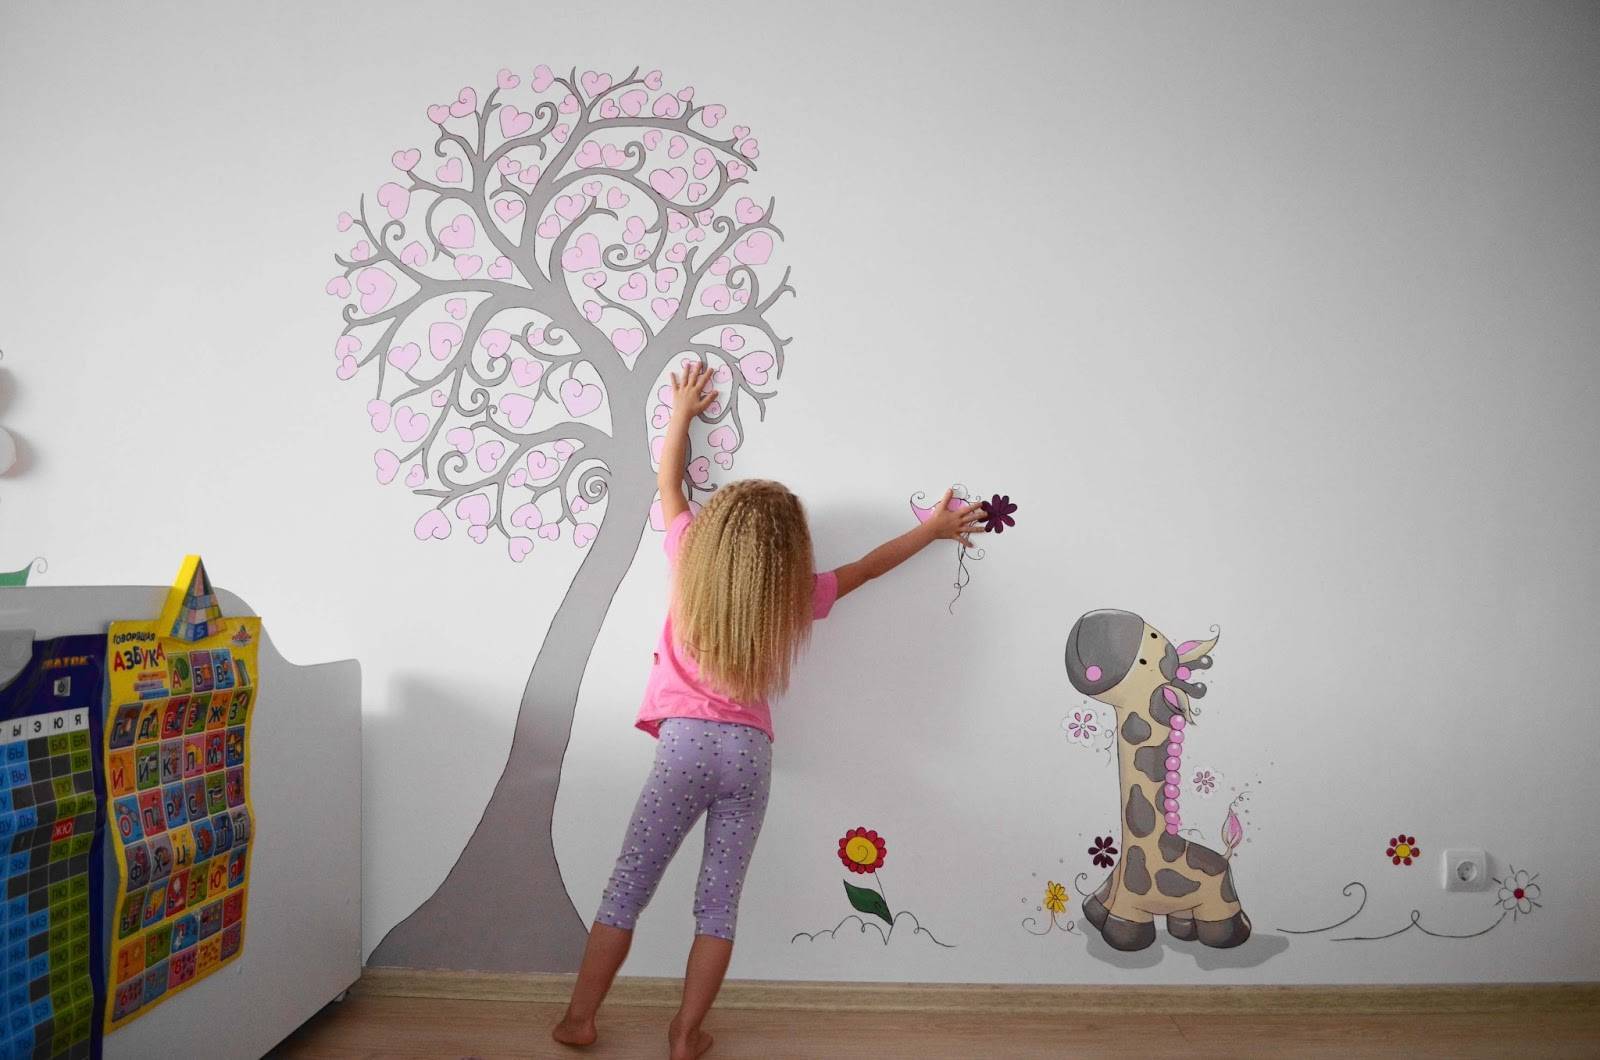 Рисунки на стене в квартире своими руками: поэтапная инструкция, как сделать рисунки на стенах